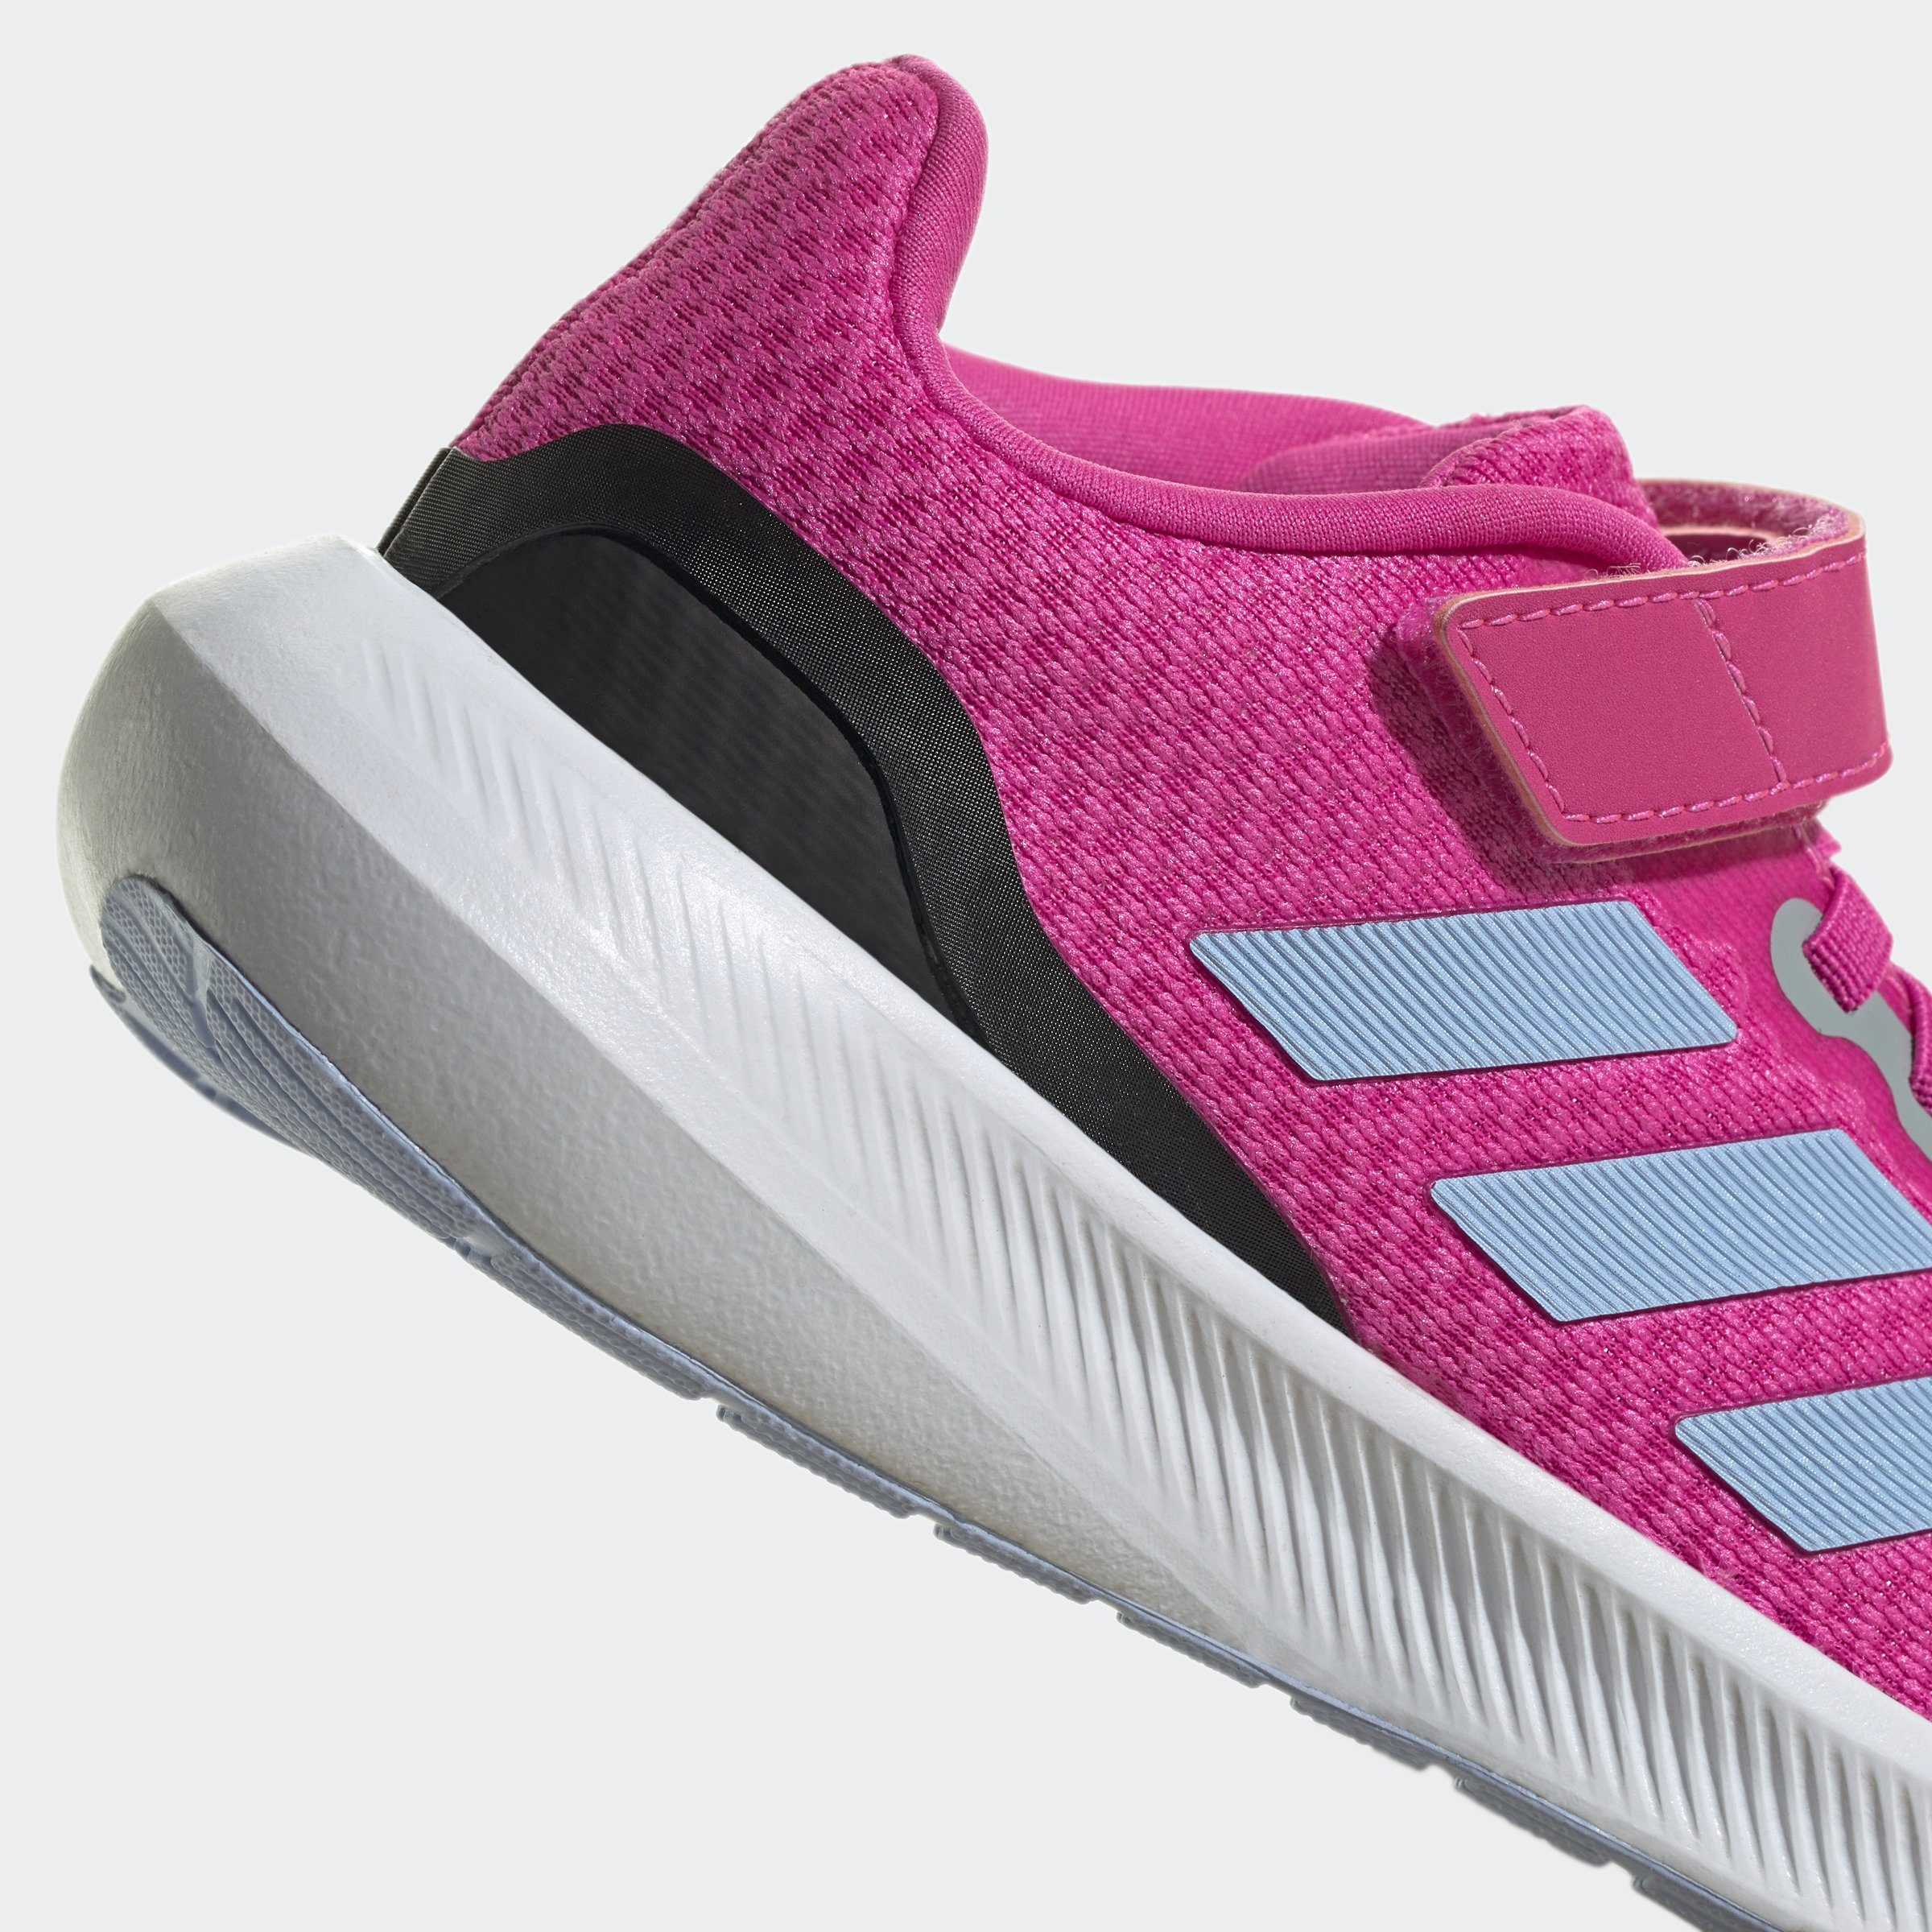 STRAP RUNFALCON TOP ELASTIC Sneaker adidas pink 3.0 Sportswear LACE